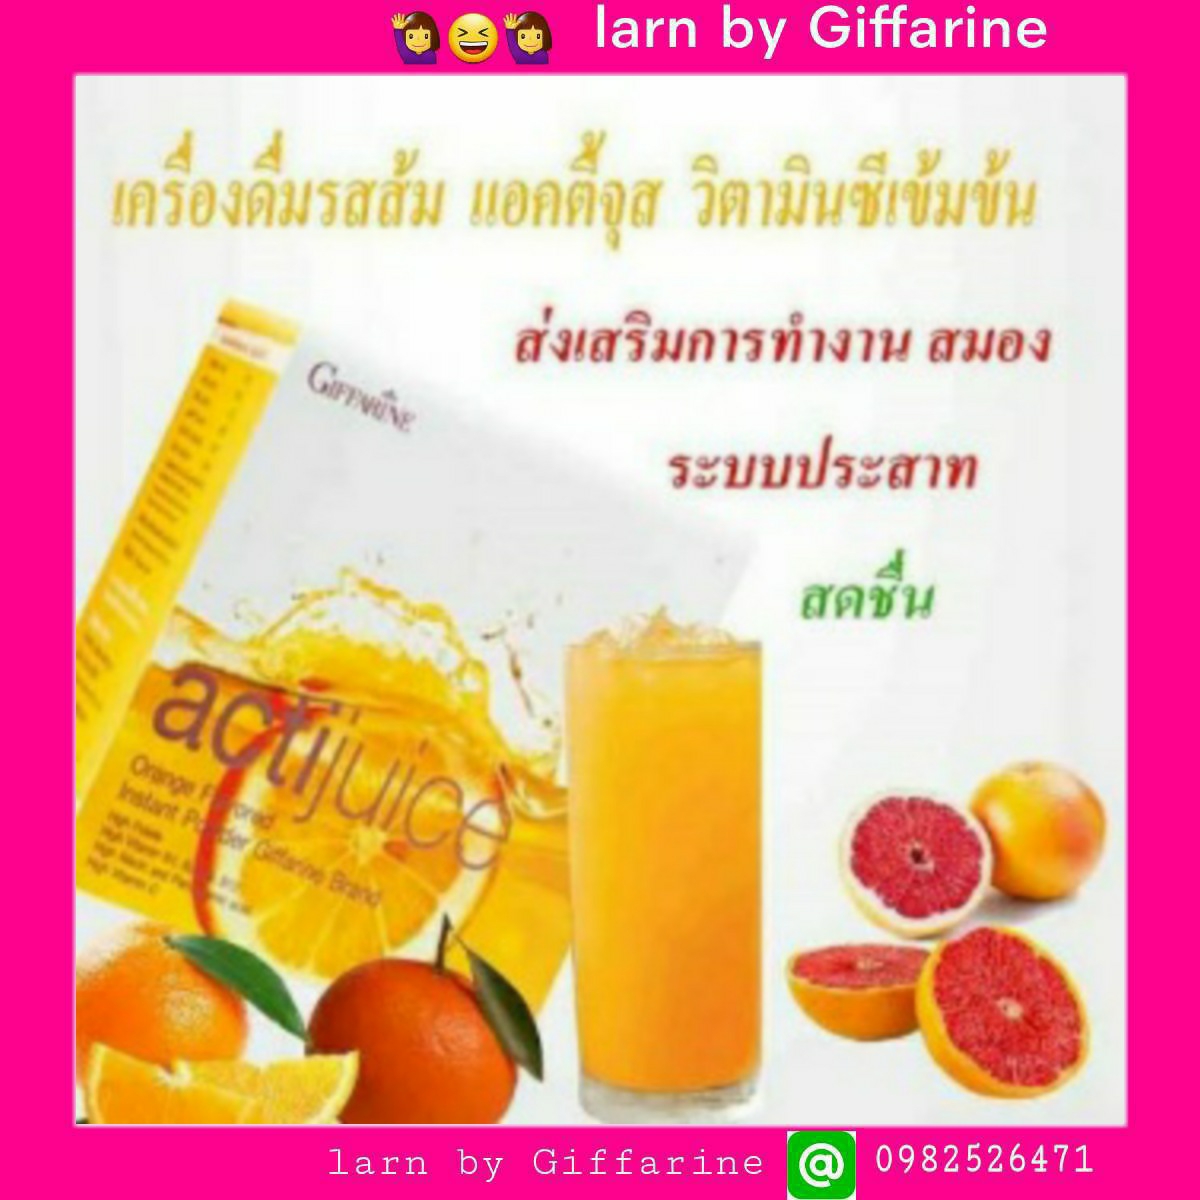 กิฟฟารีน เครื่องดื่ม รสส้ม กิฟฟารีน#แอคติจูส (Actijuice) ผลิตภัณฑ์ อาหารเสริมเพื่อผิวสวย และทาน เครื่องดื่มรสส้ม